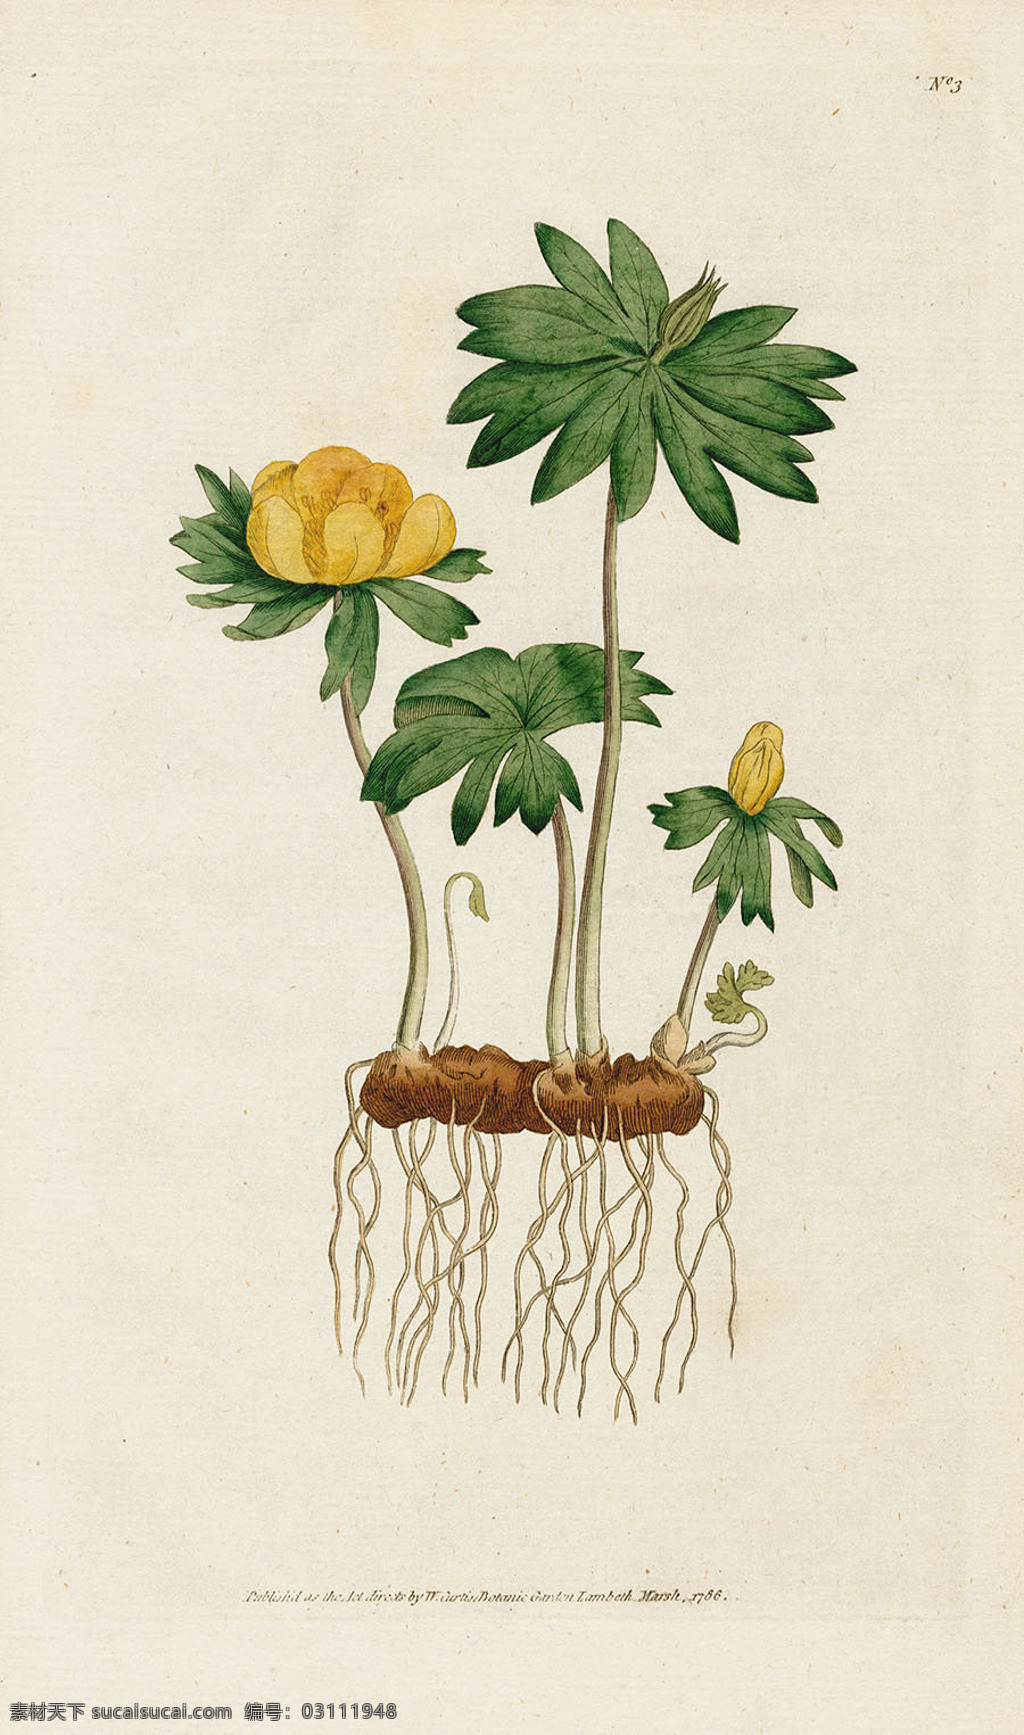 欧式 复古 色调 花朵 植物 植物花朵 装饰画 植物图谱 植物手绘 欧美 复古花卉 古典植物插画 参考素材 复古色调 文化艺术 绘画书法